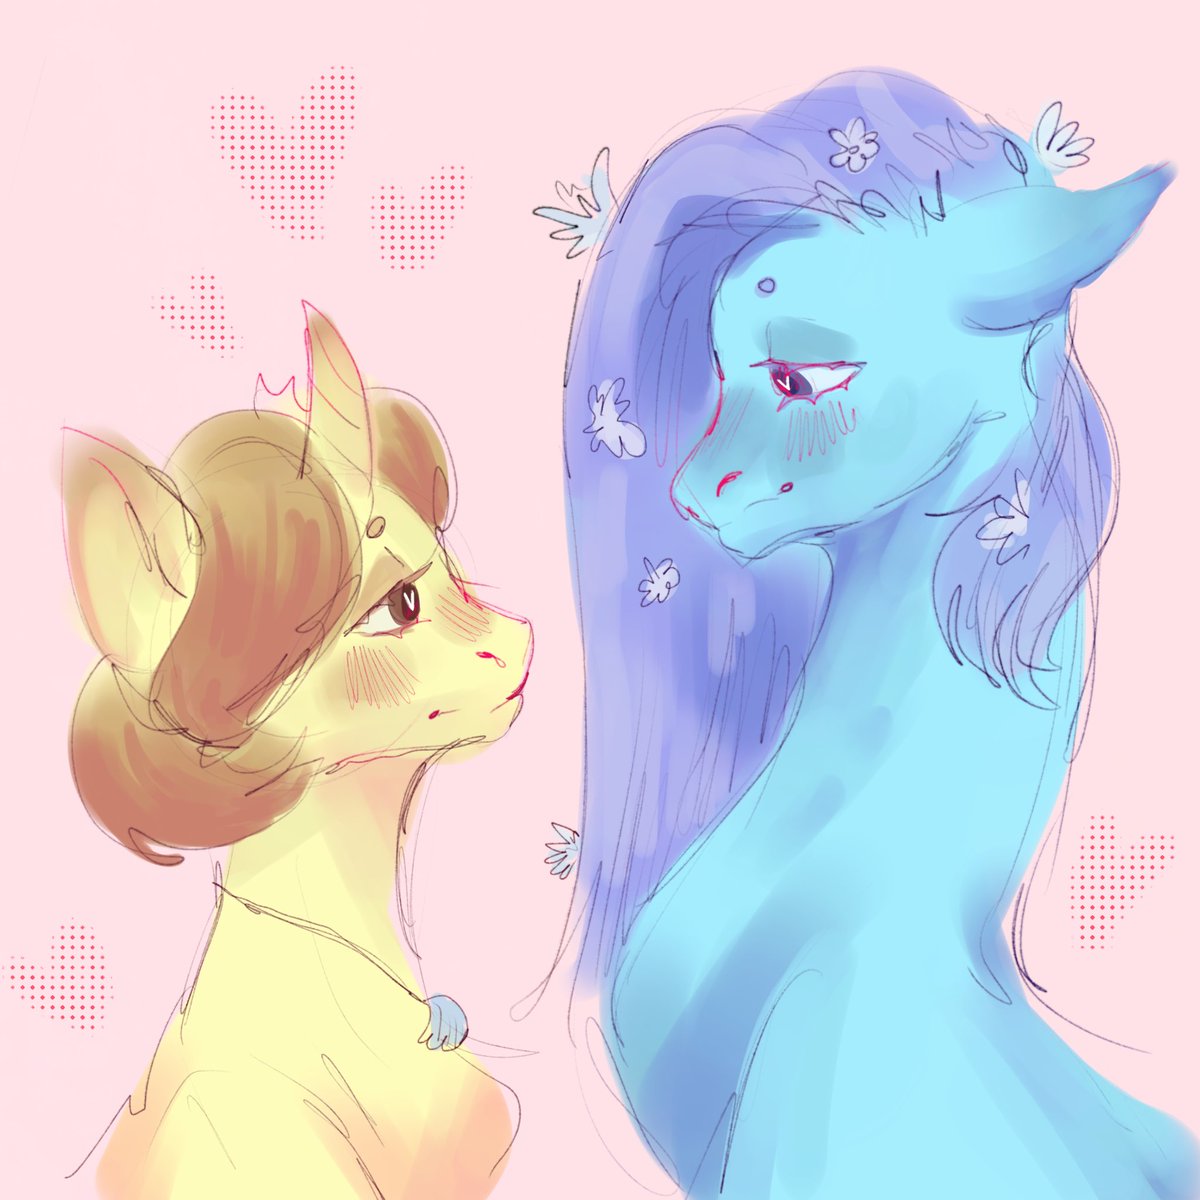 My pony girls !! #oc #art #sketch #pony #mlp